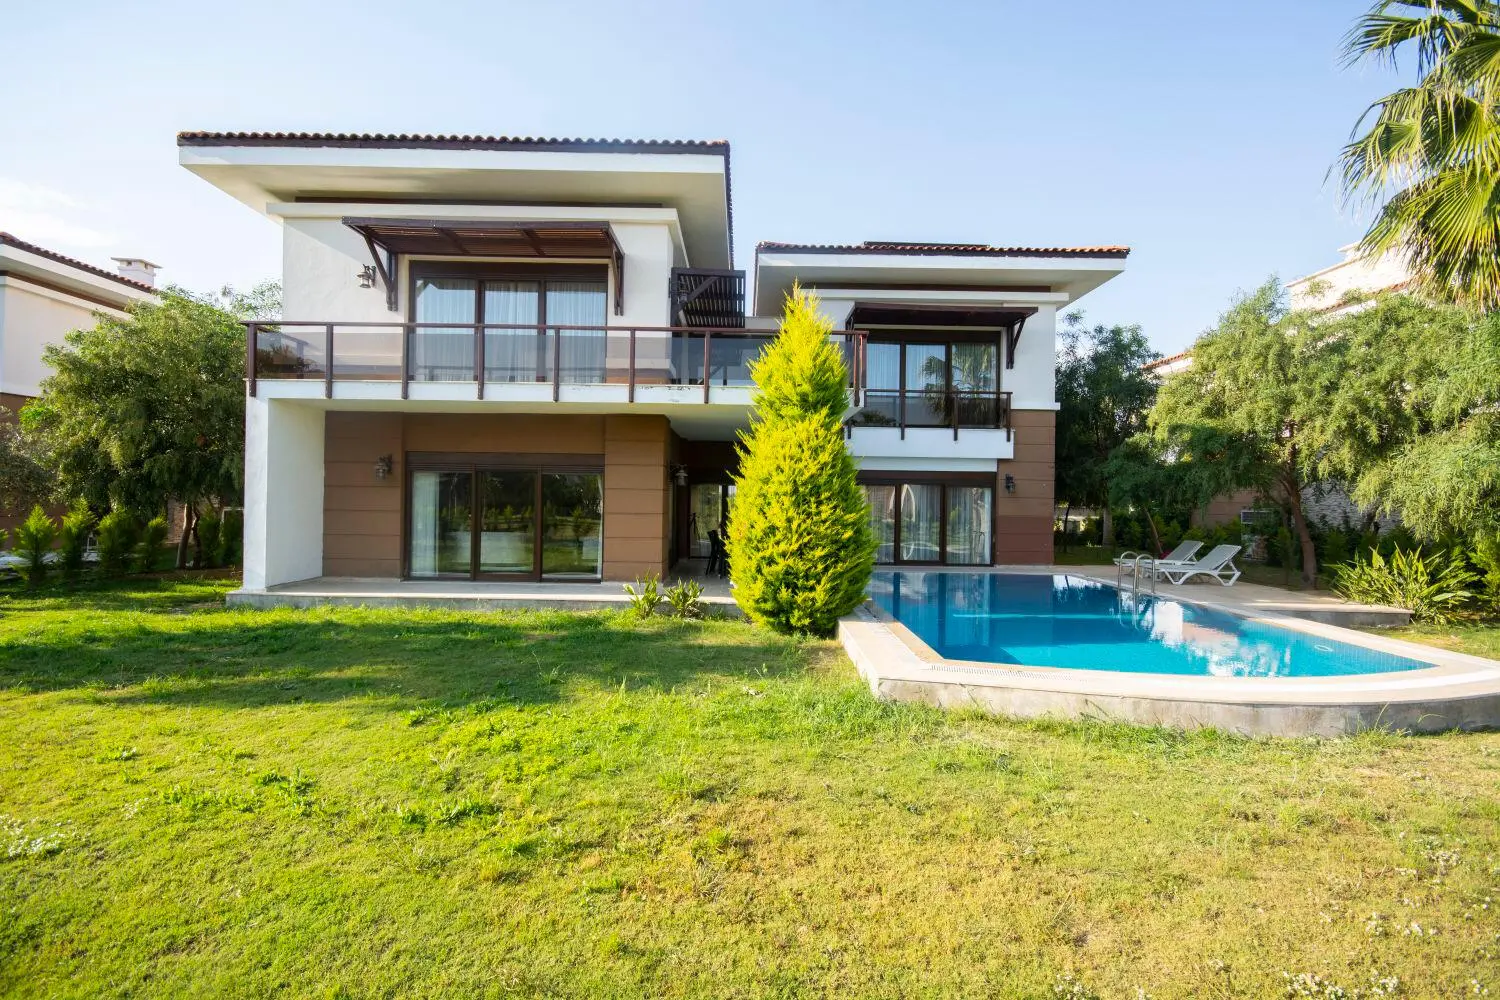 Antalya'da satılık müstakil ev